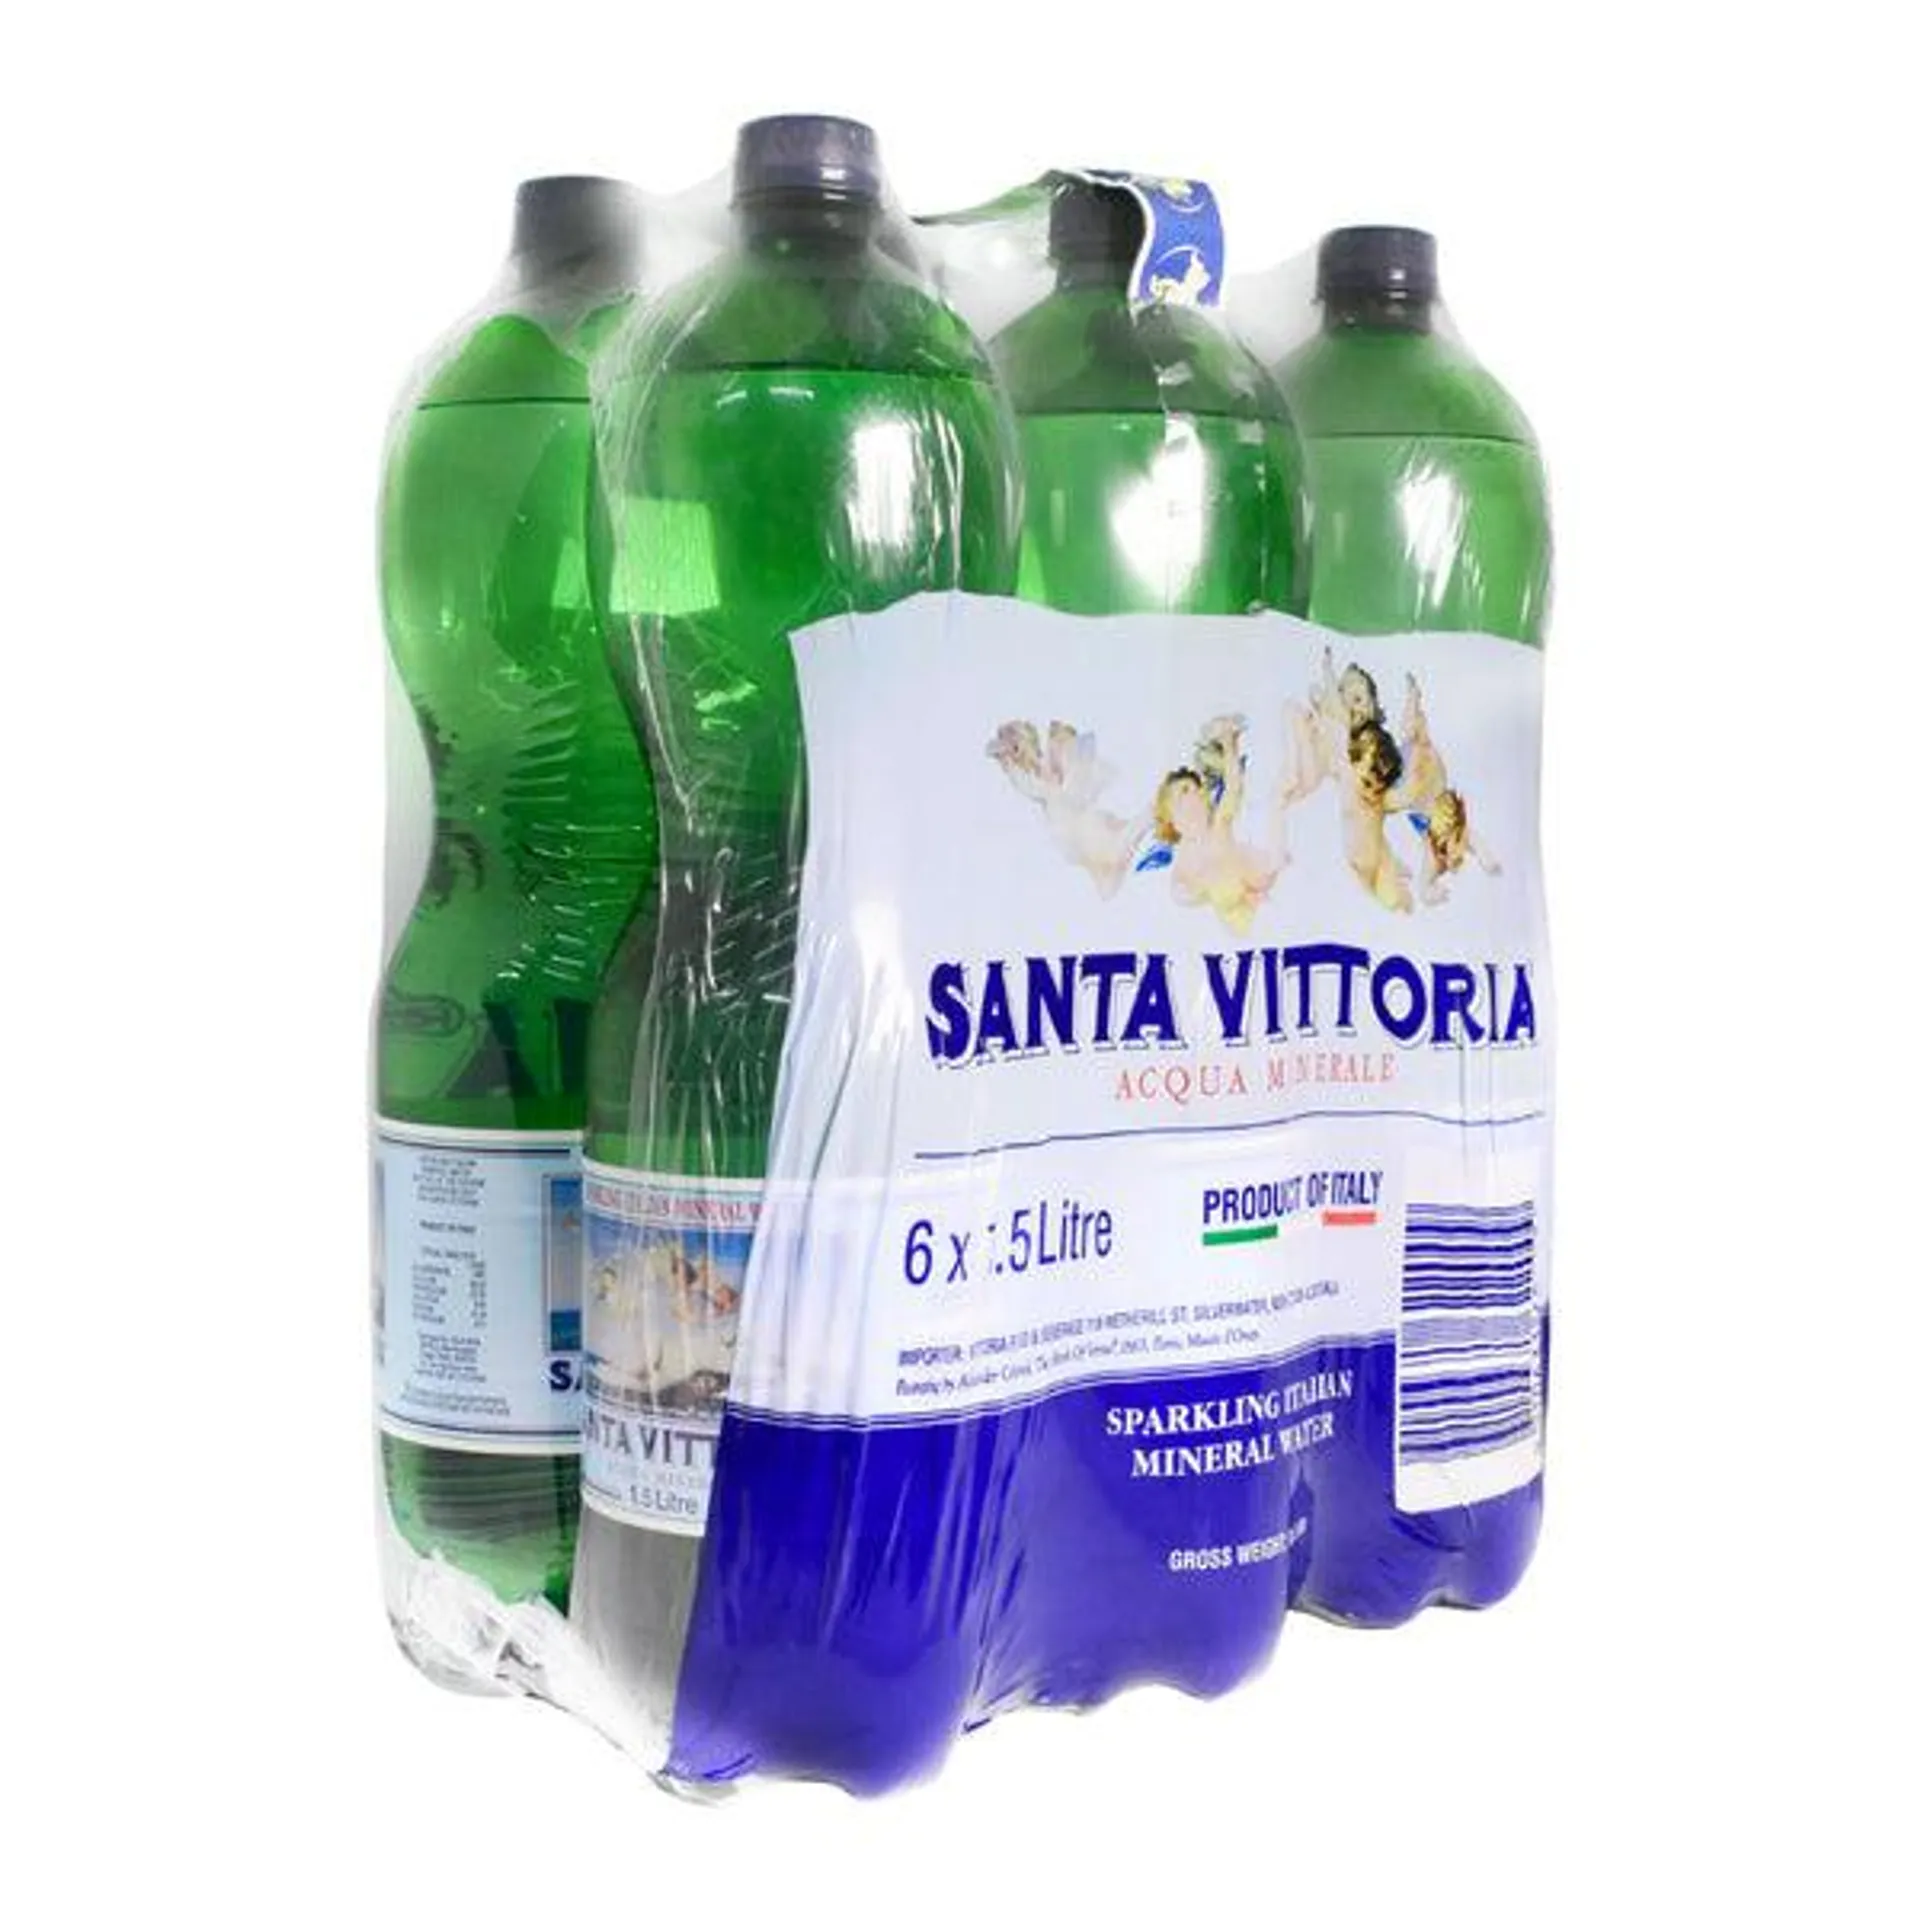 Santa Vittoria Sparkling Italian Mineral Water 6x1.5L